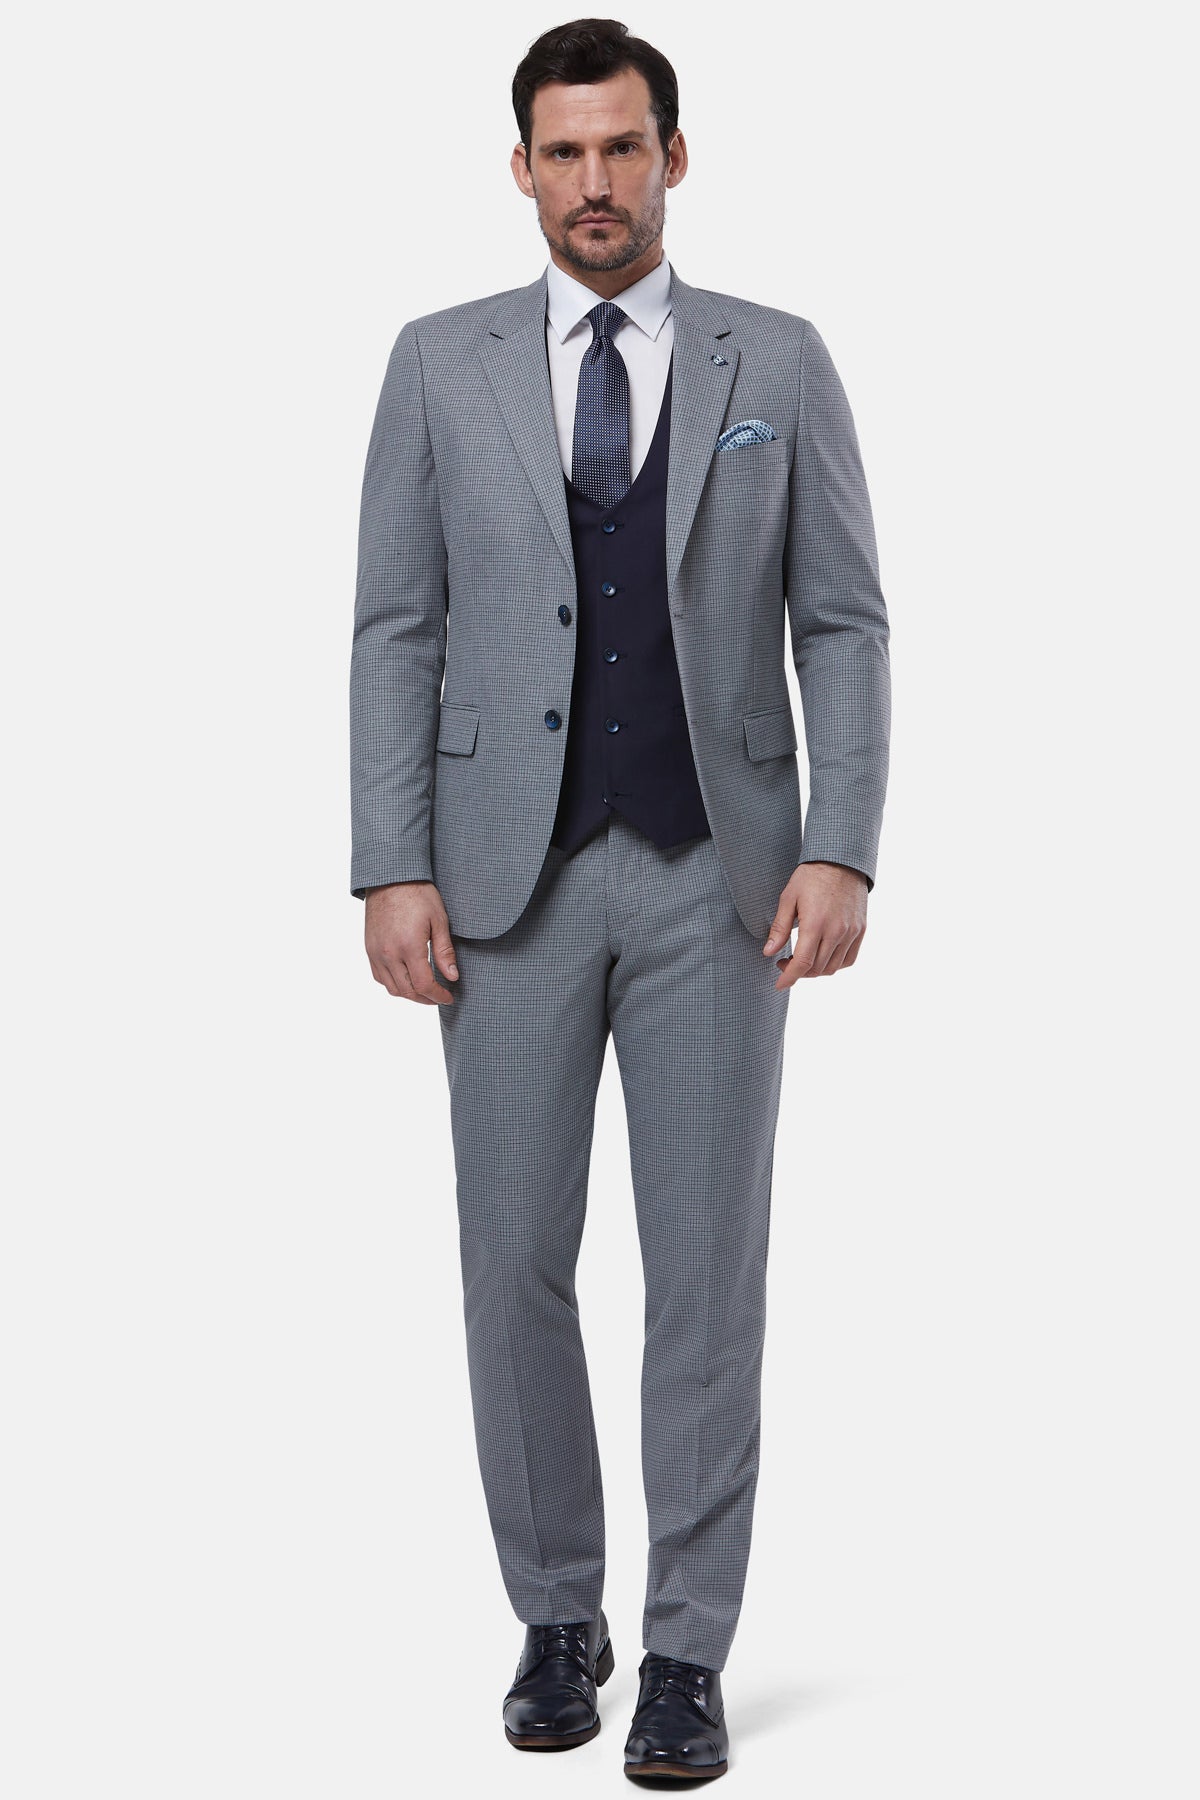 Buy Men Maroon Textured Slim Fit Wedding Three Piece Suit Online - 622581 |  Peter England